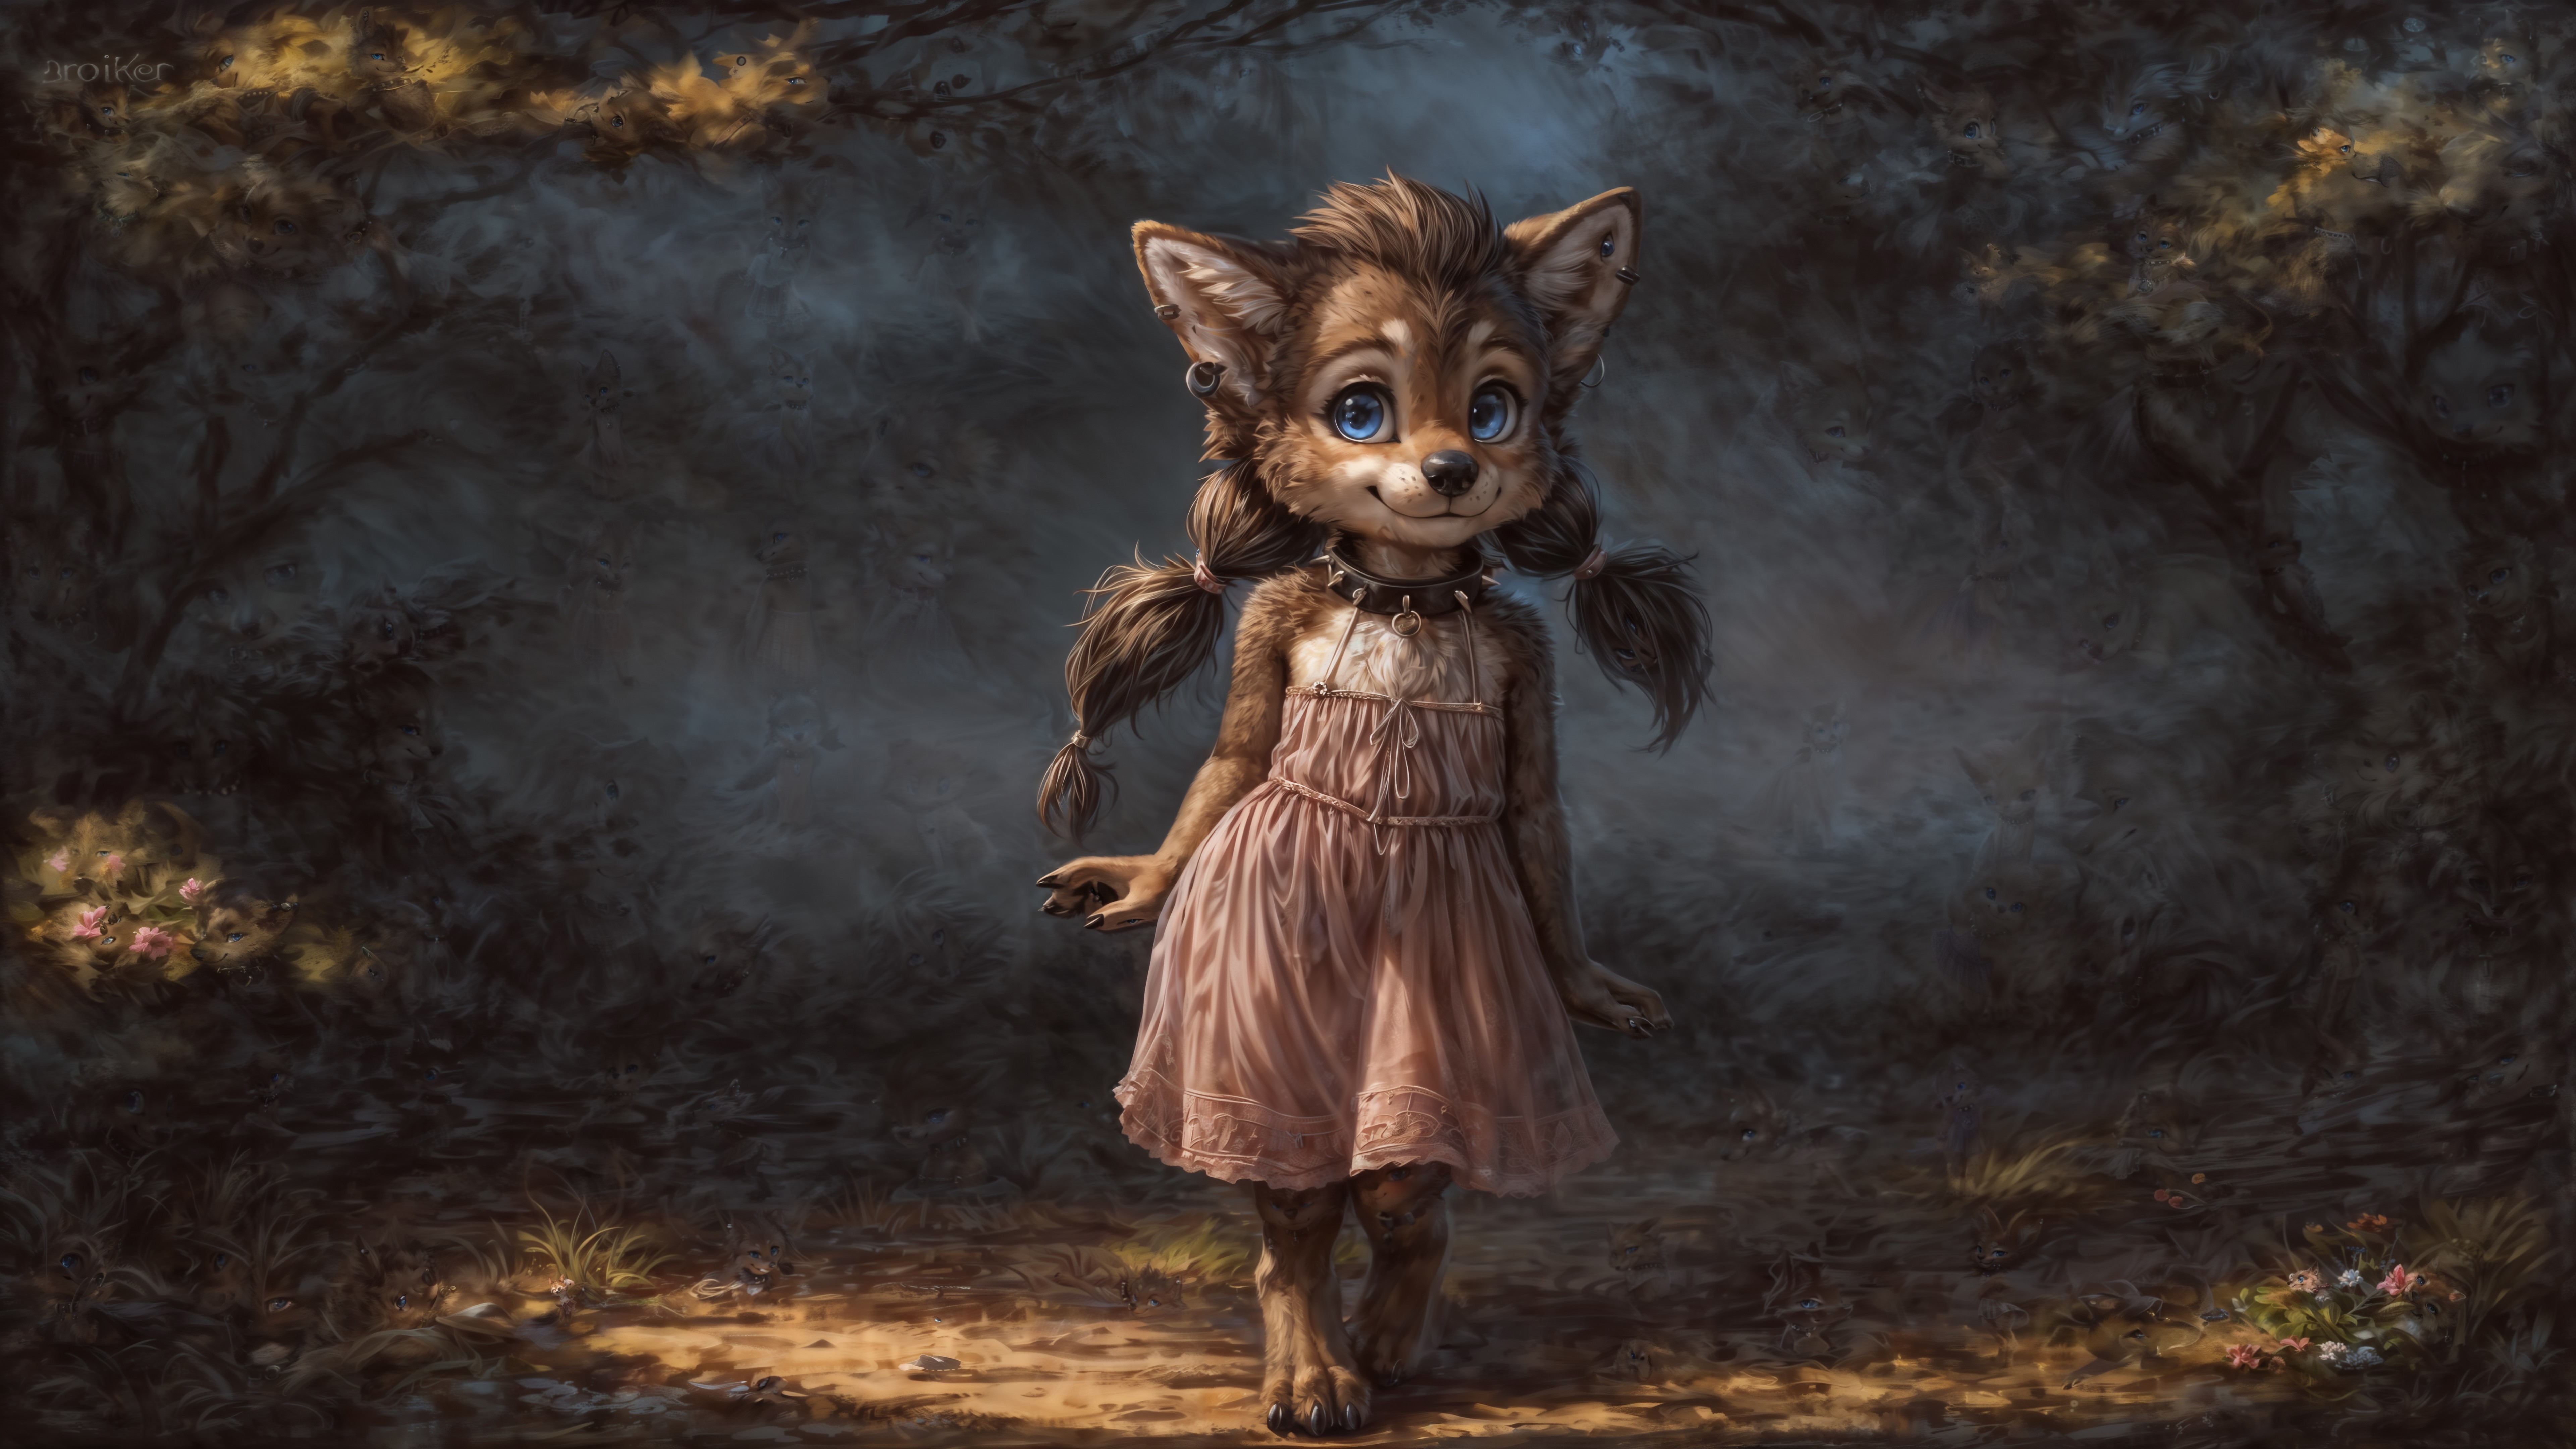 Winnie Werewolf image by dextermorgan